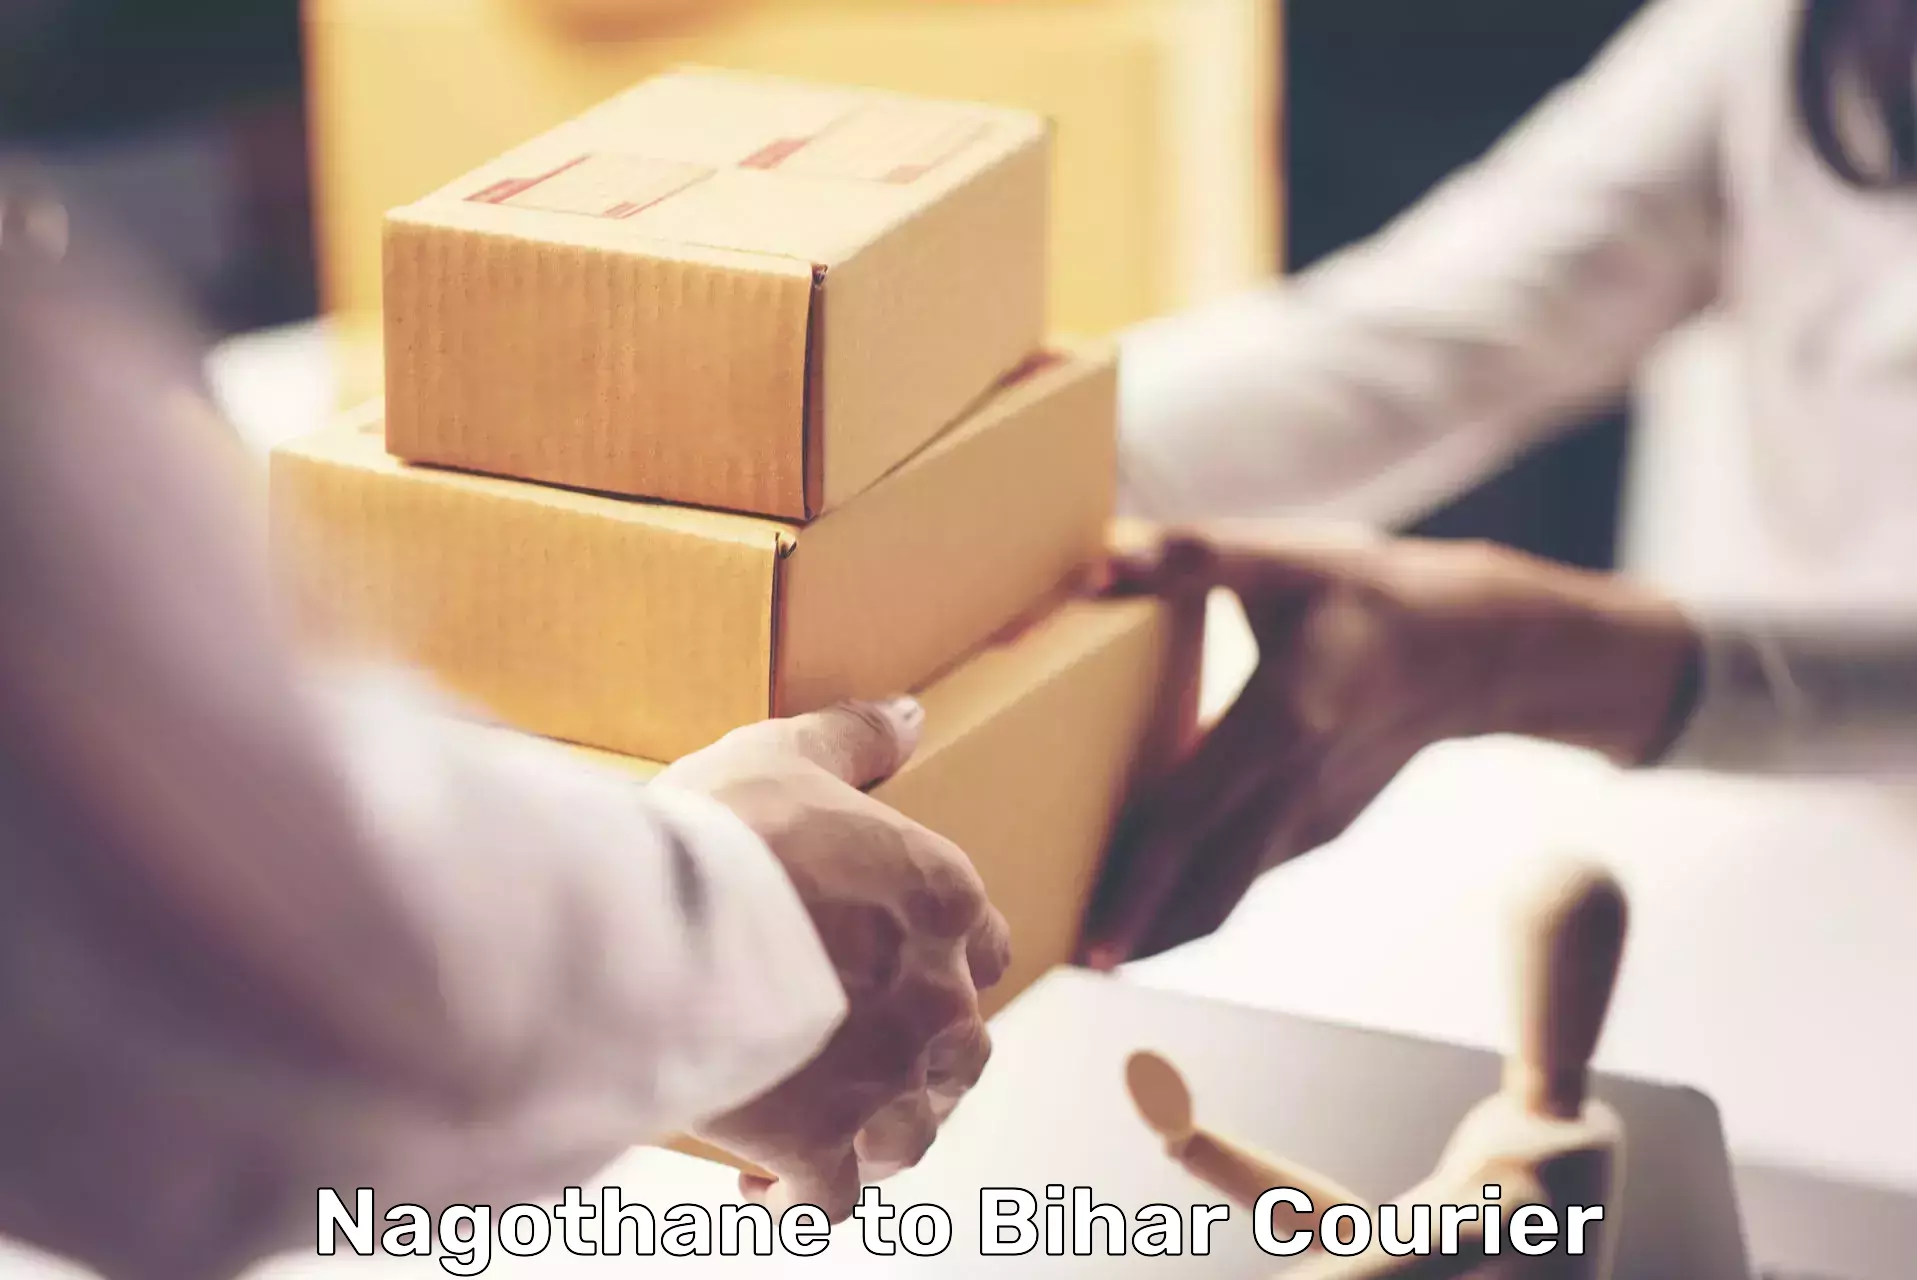 Shipping and handling Nagothane to Nawada